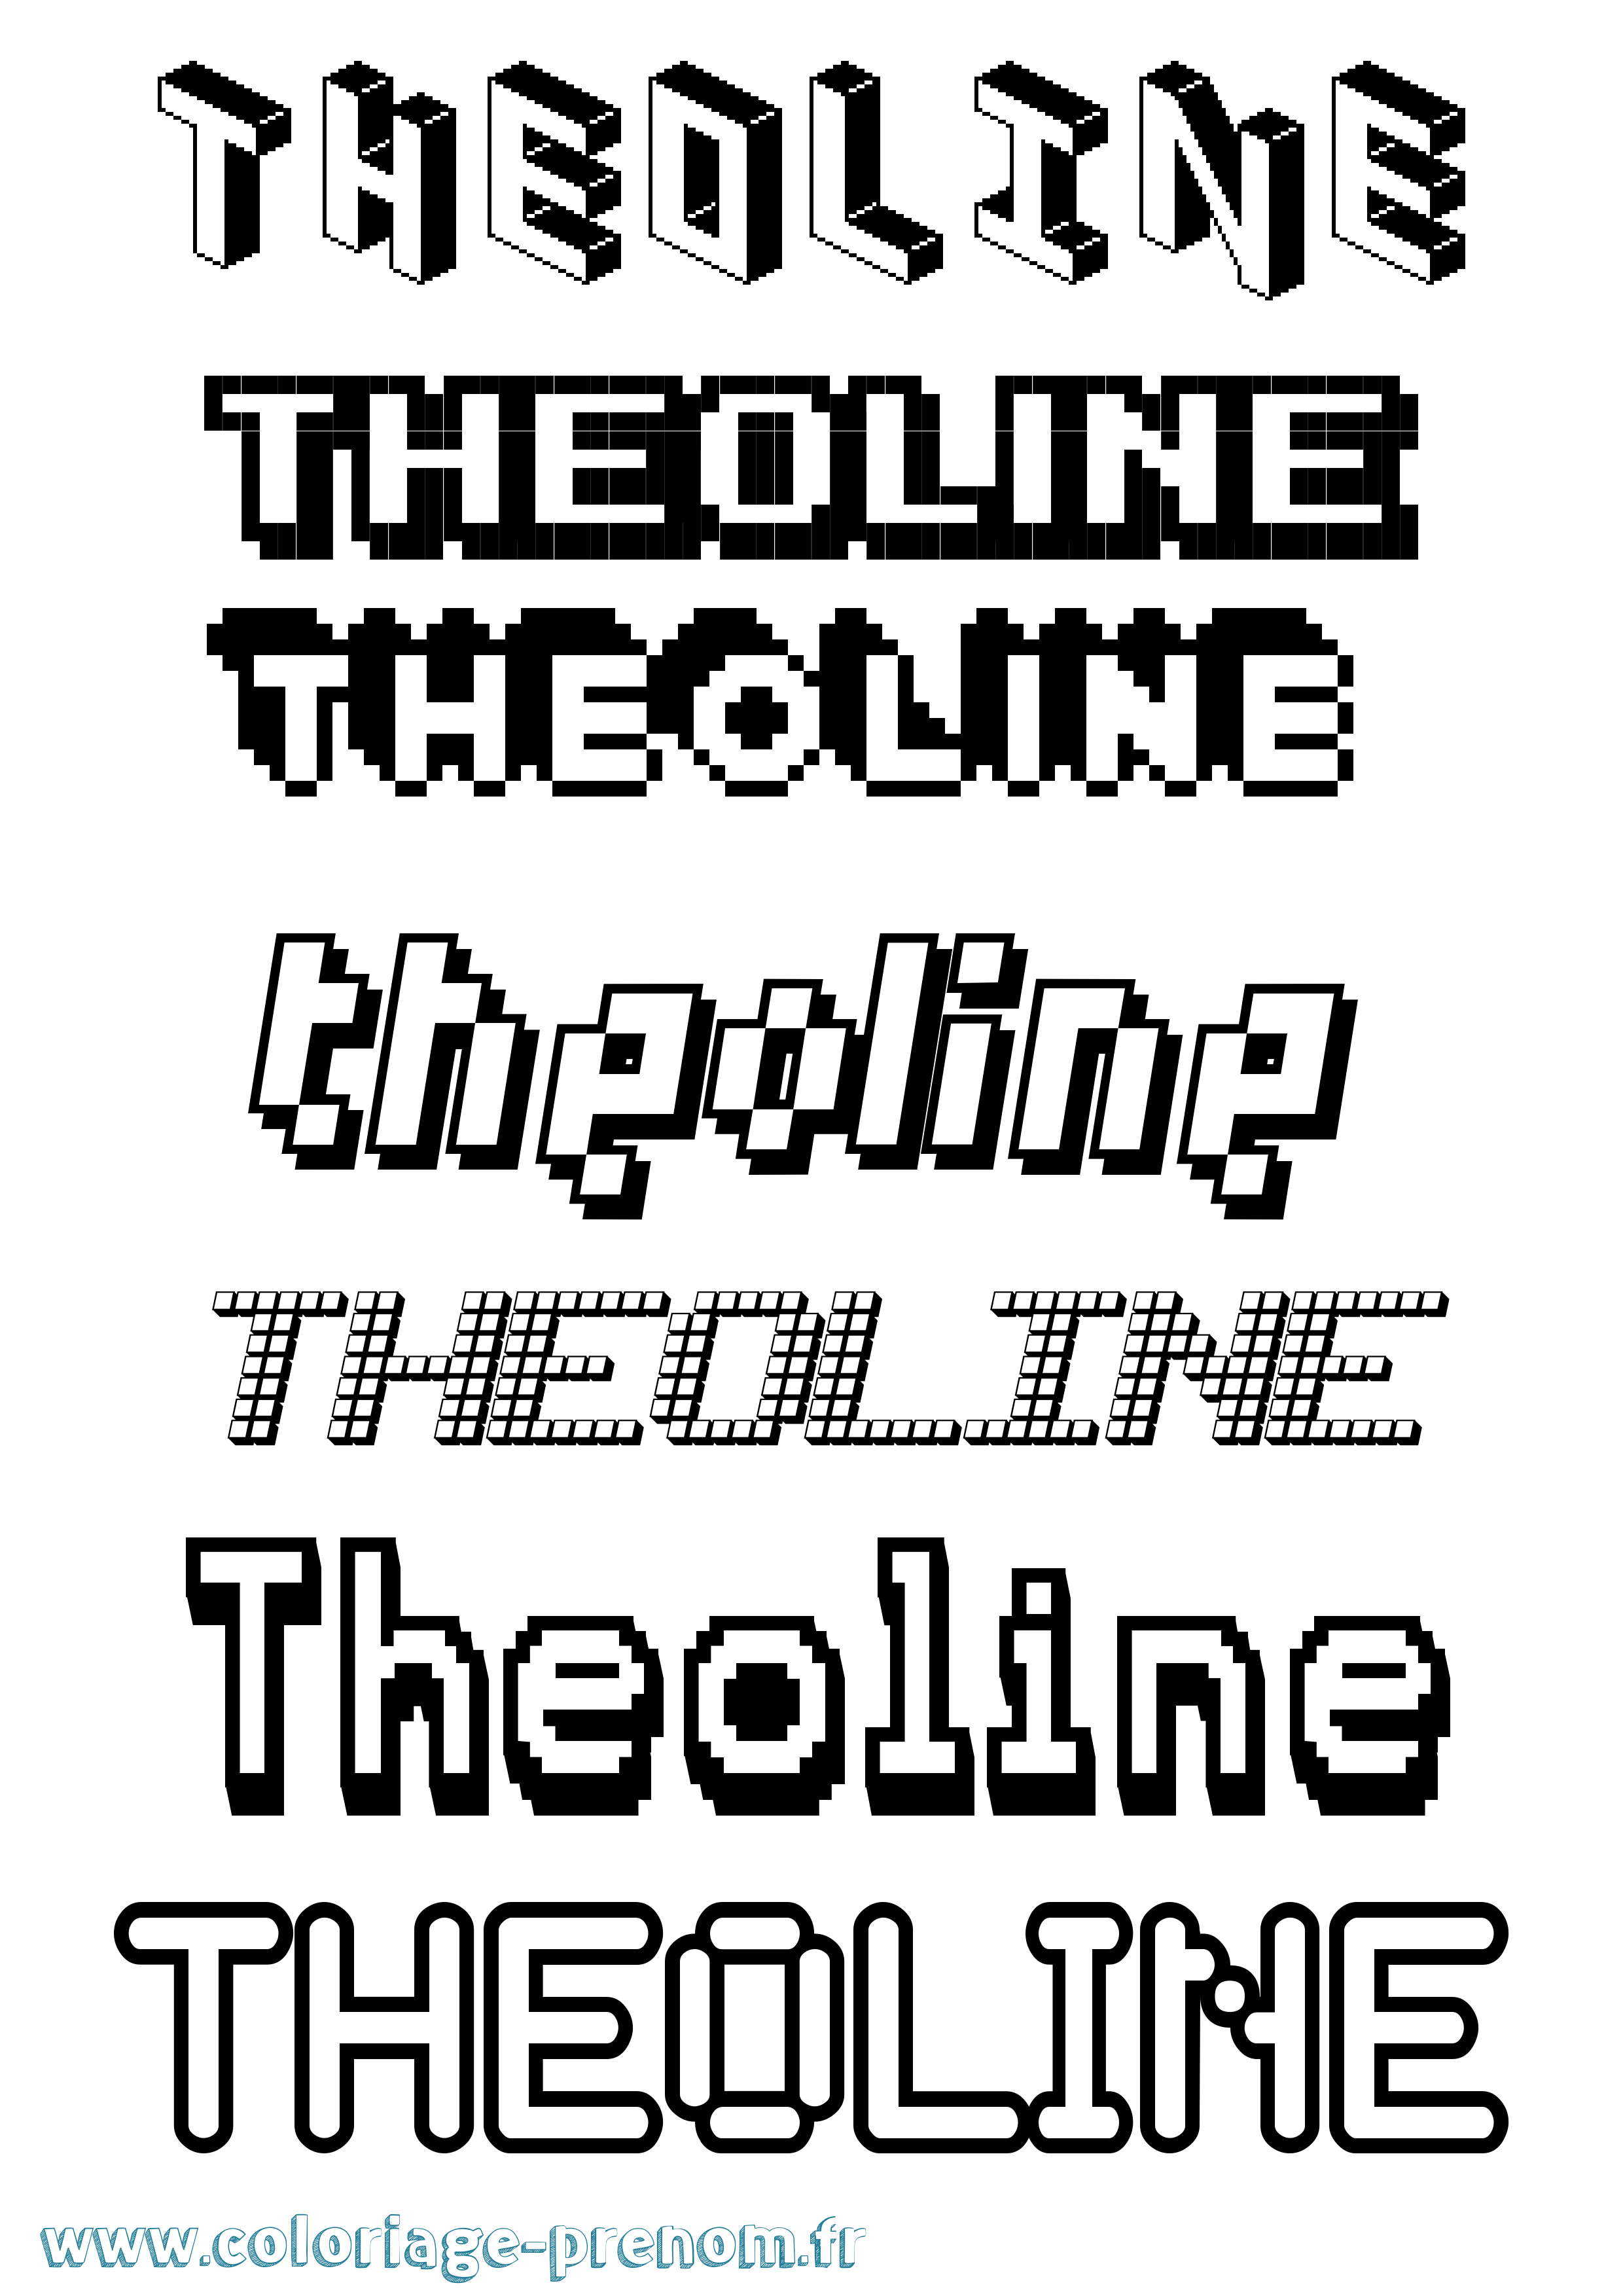 Coloriage prénom Theoline Pixel